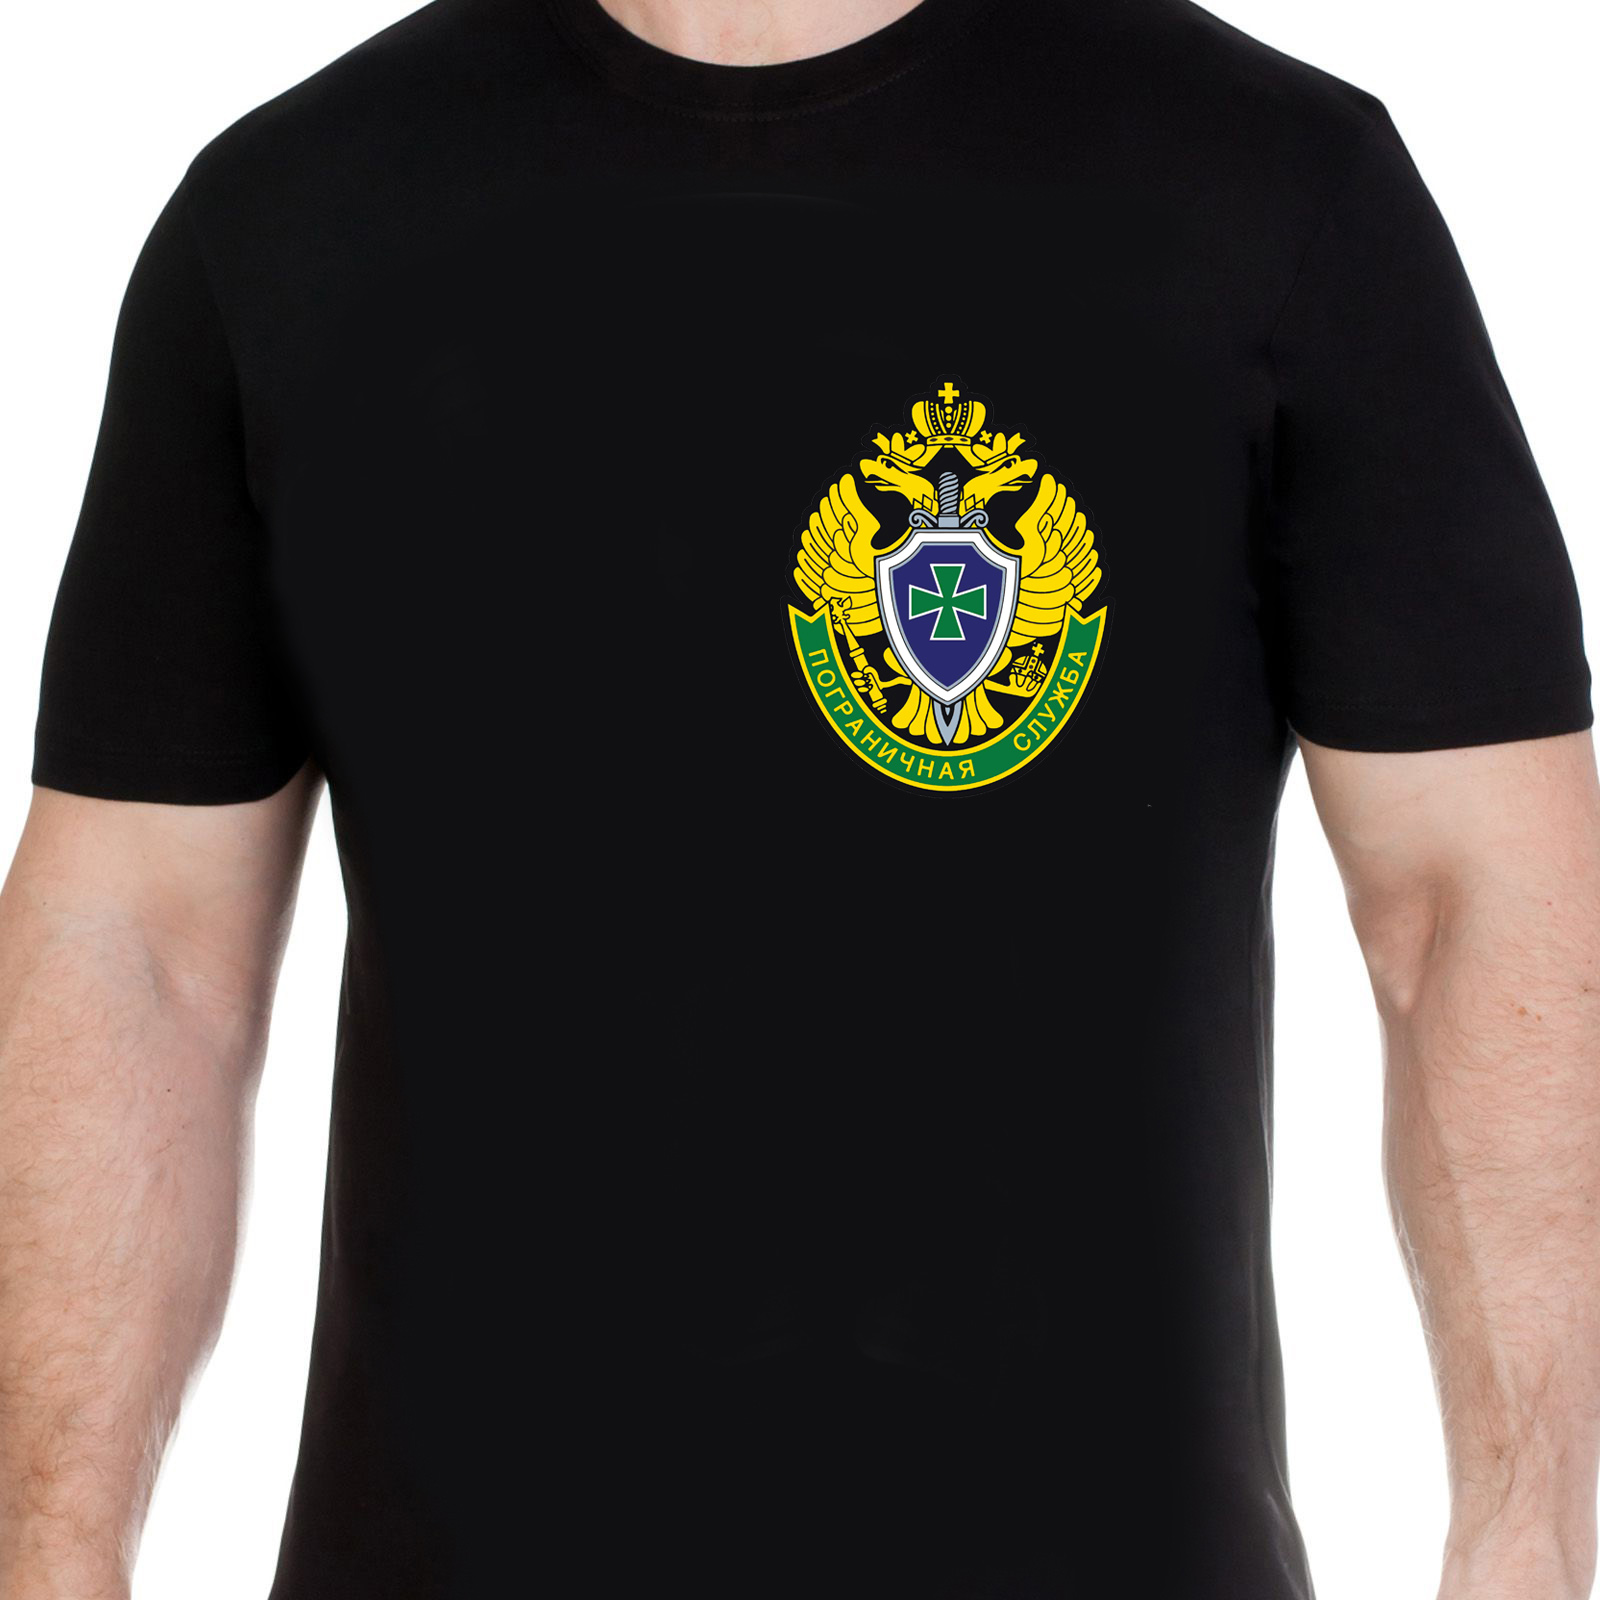 Черная футболка с эмблемой ПС ФСБ - недорогой подарок пограничнику